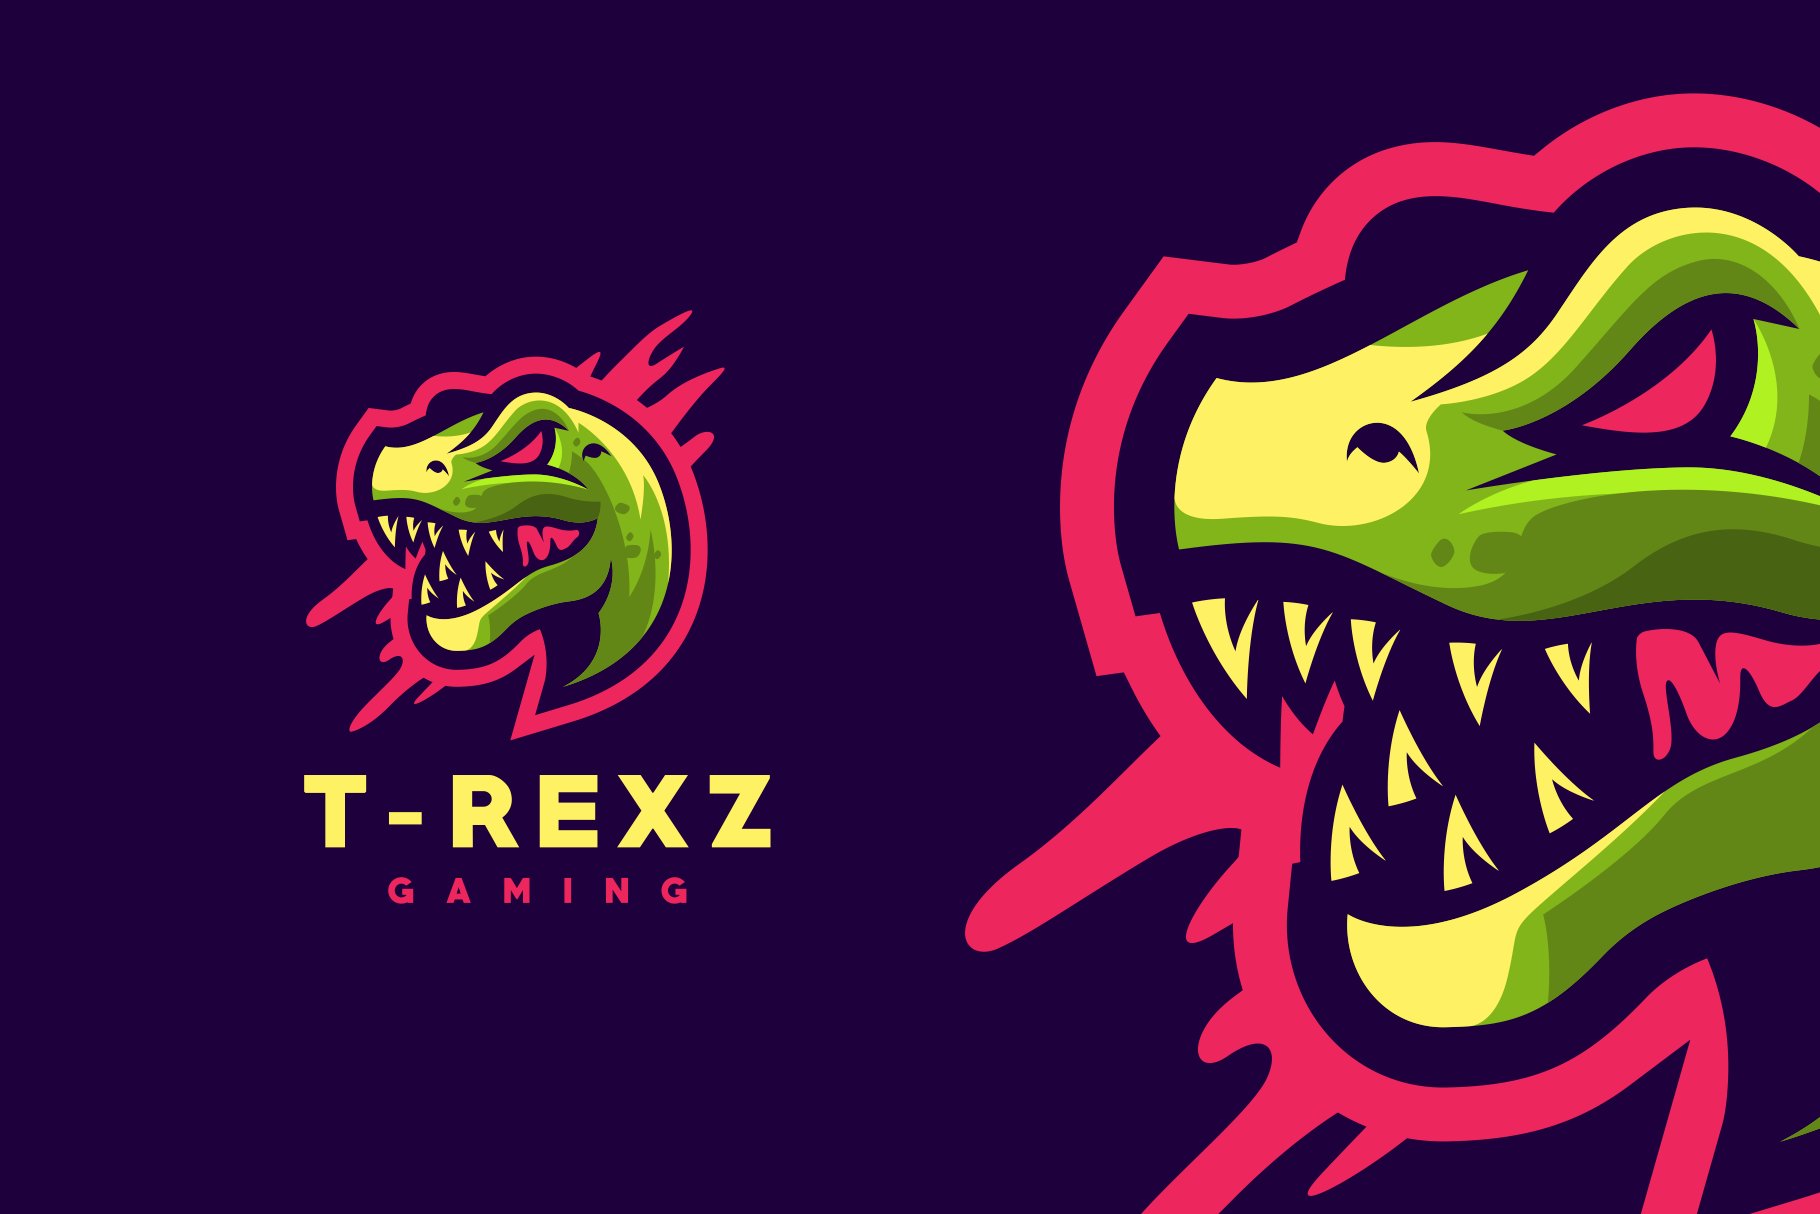 T-rex Gaming Logo cover image.